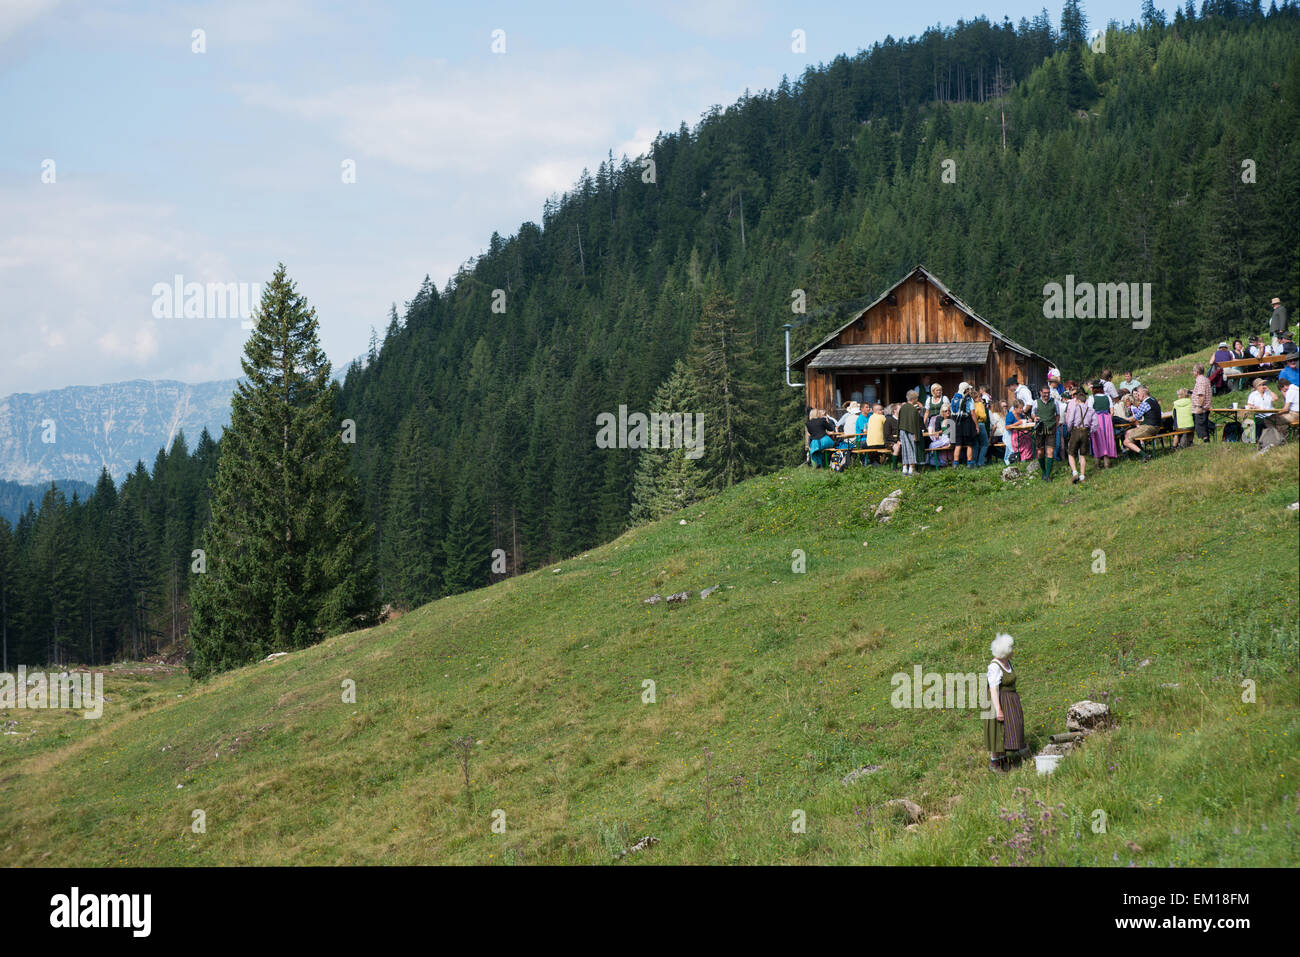 Musiker und Zuschauer bei einer Almhütte, dahinter Wald, am Pfeifertag auf der Weissenbachalm, Salzkammergut, Steiermark, Österreich Foto Stock